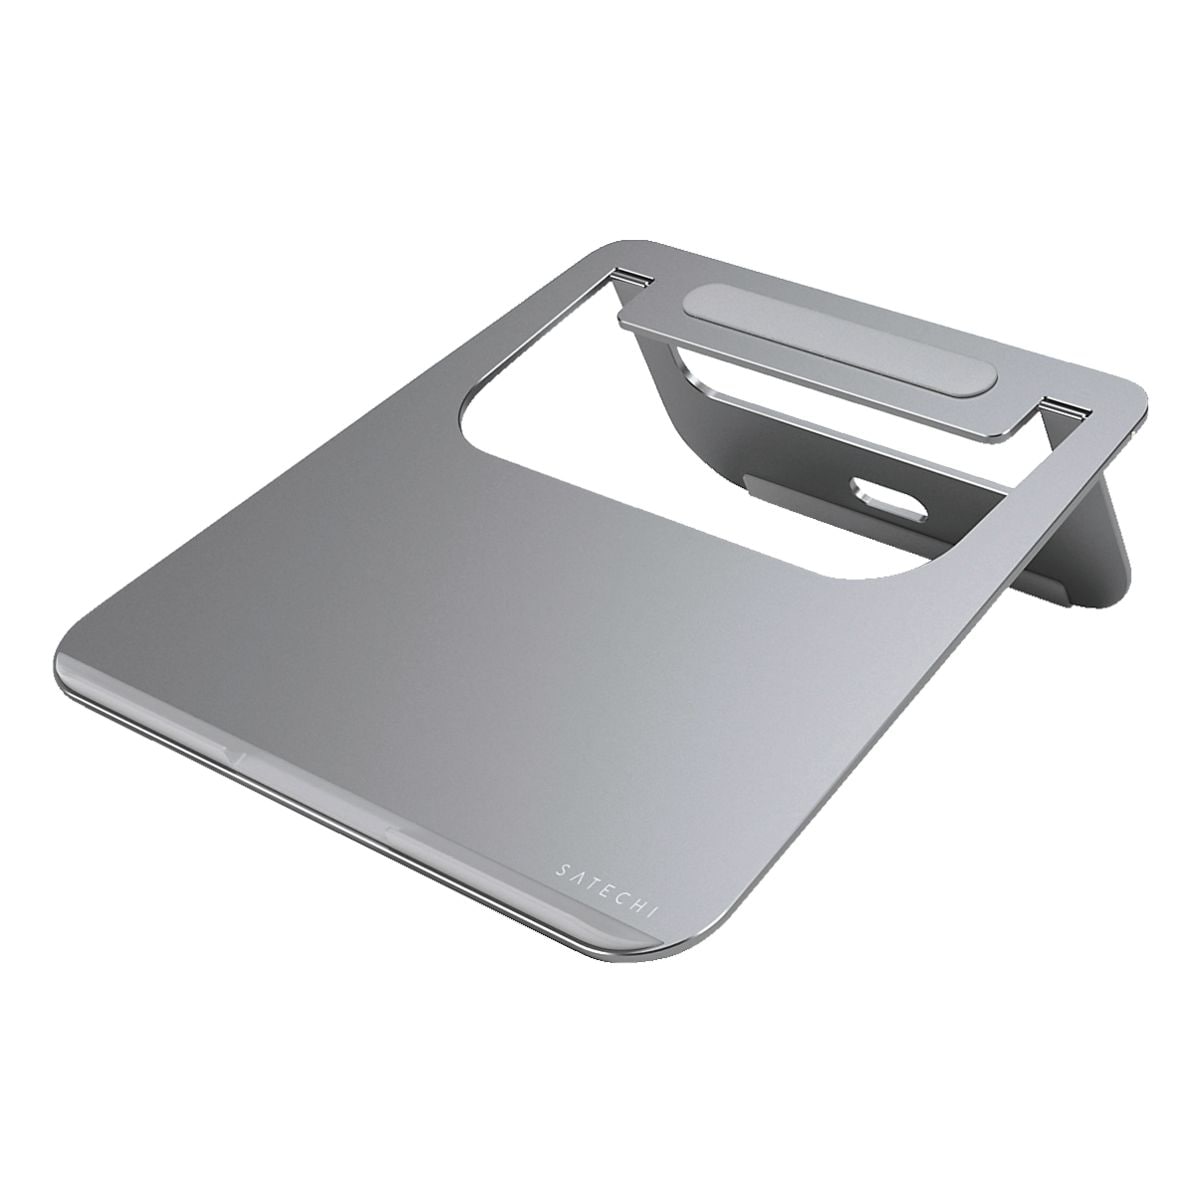 Satechi Support en aluminium pour ordinateur portable, gris sidral